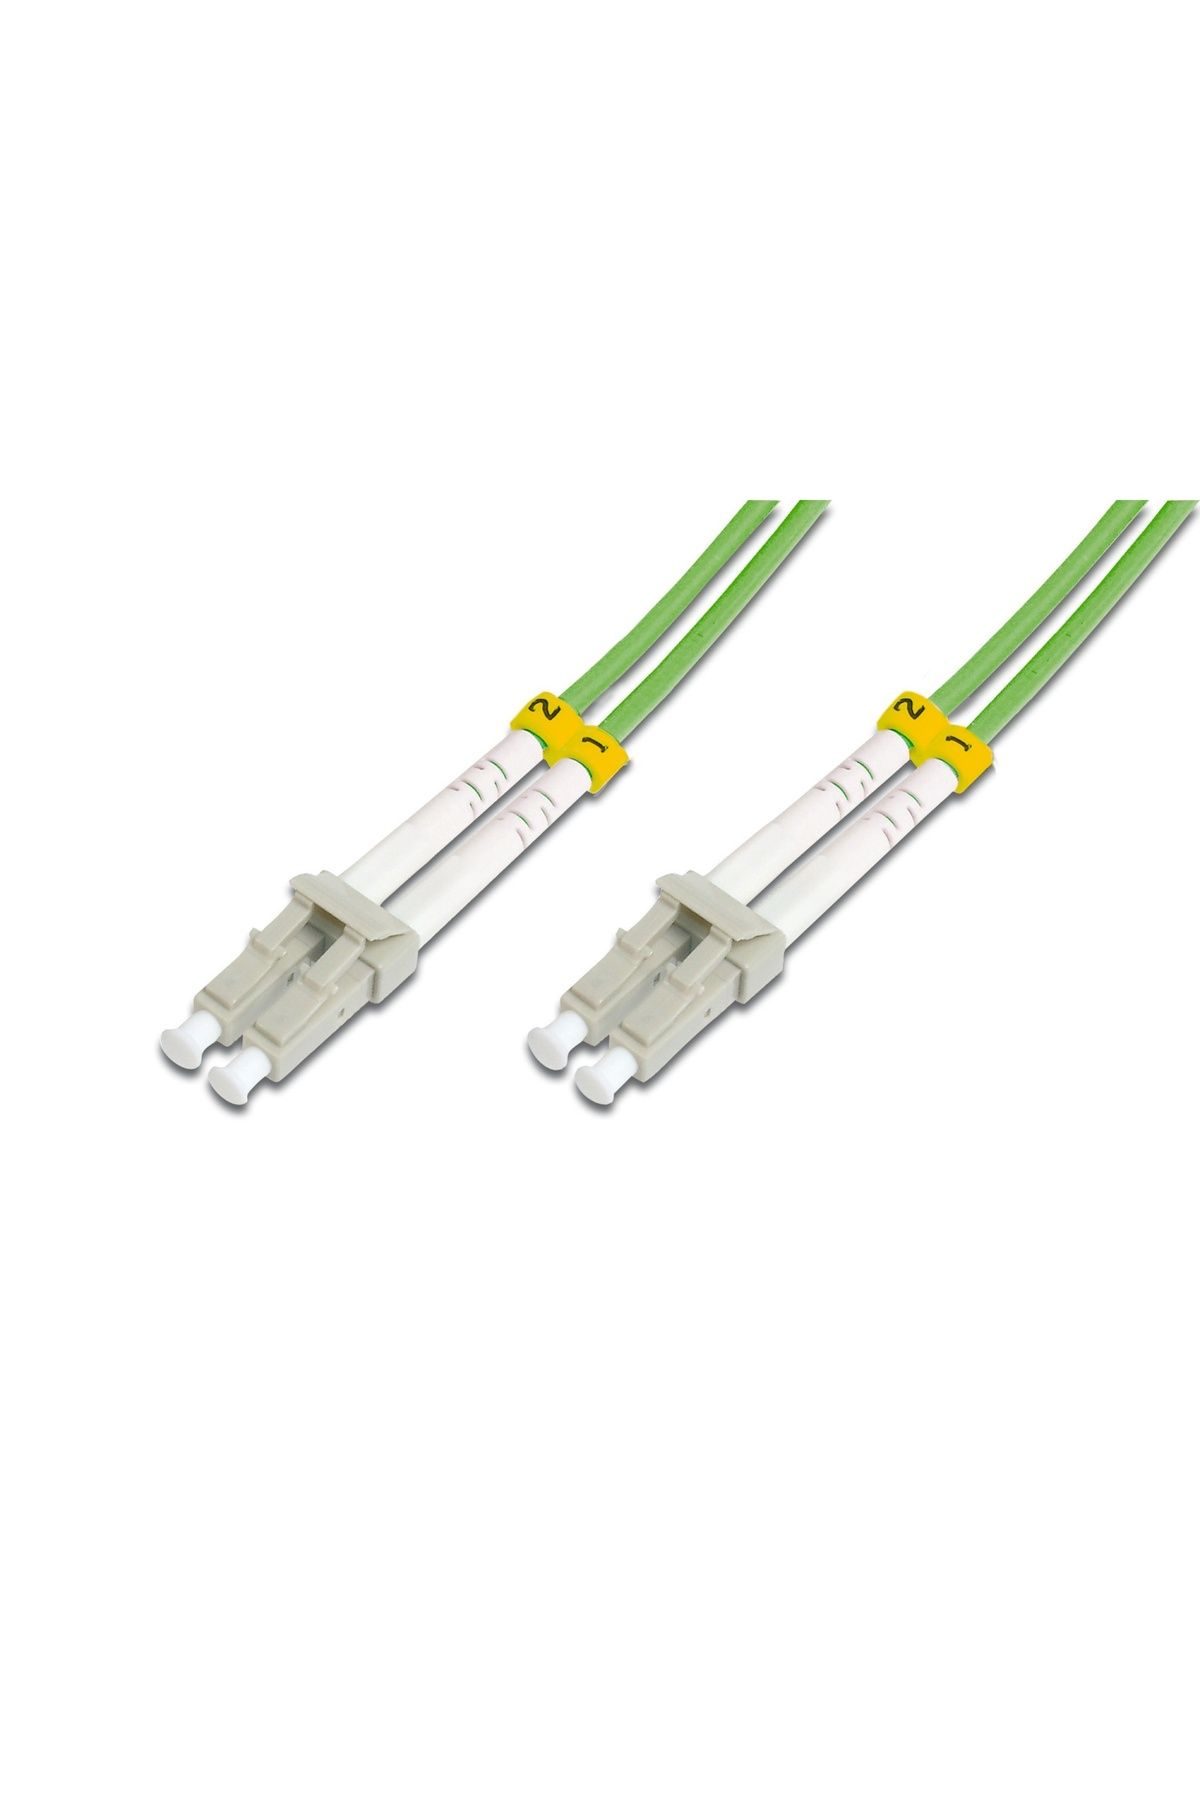 Beek Lc-lc Fiber Optik Patch Kablo, Multimode Om 5 50/125 Duplex, 3.0mm, Lszh, 10 Metre